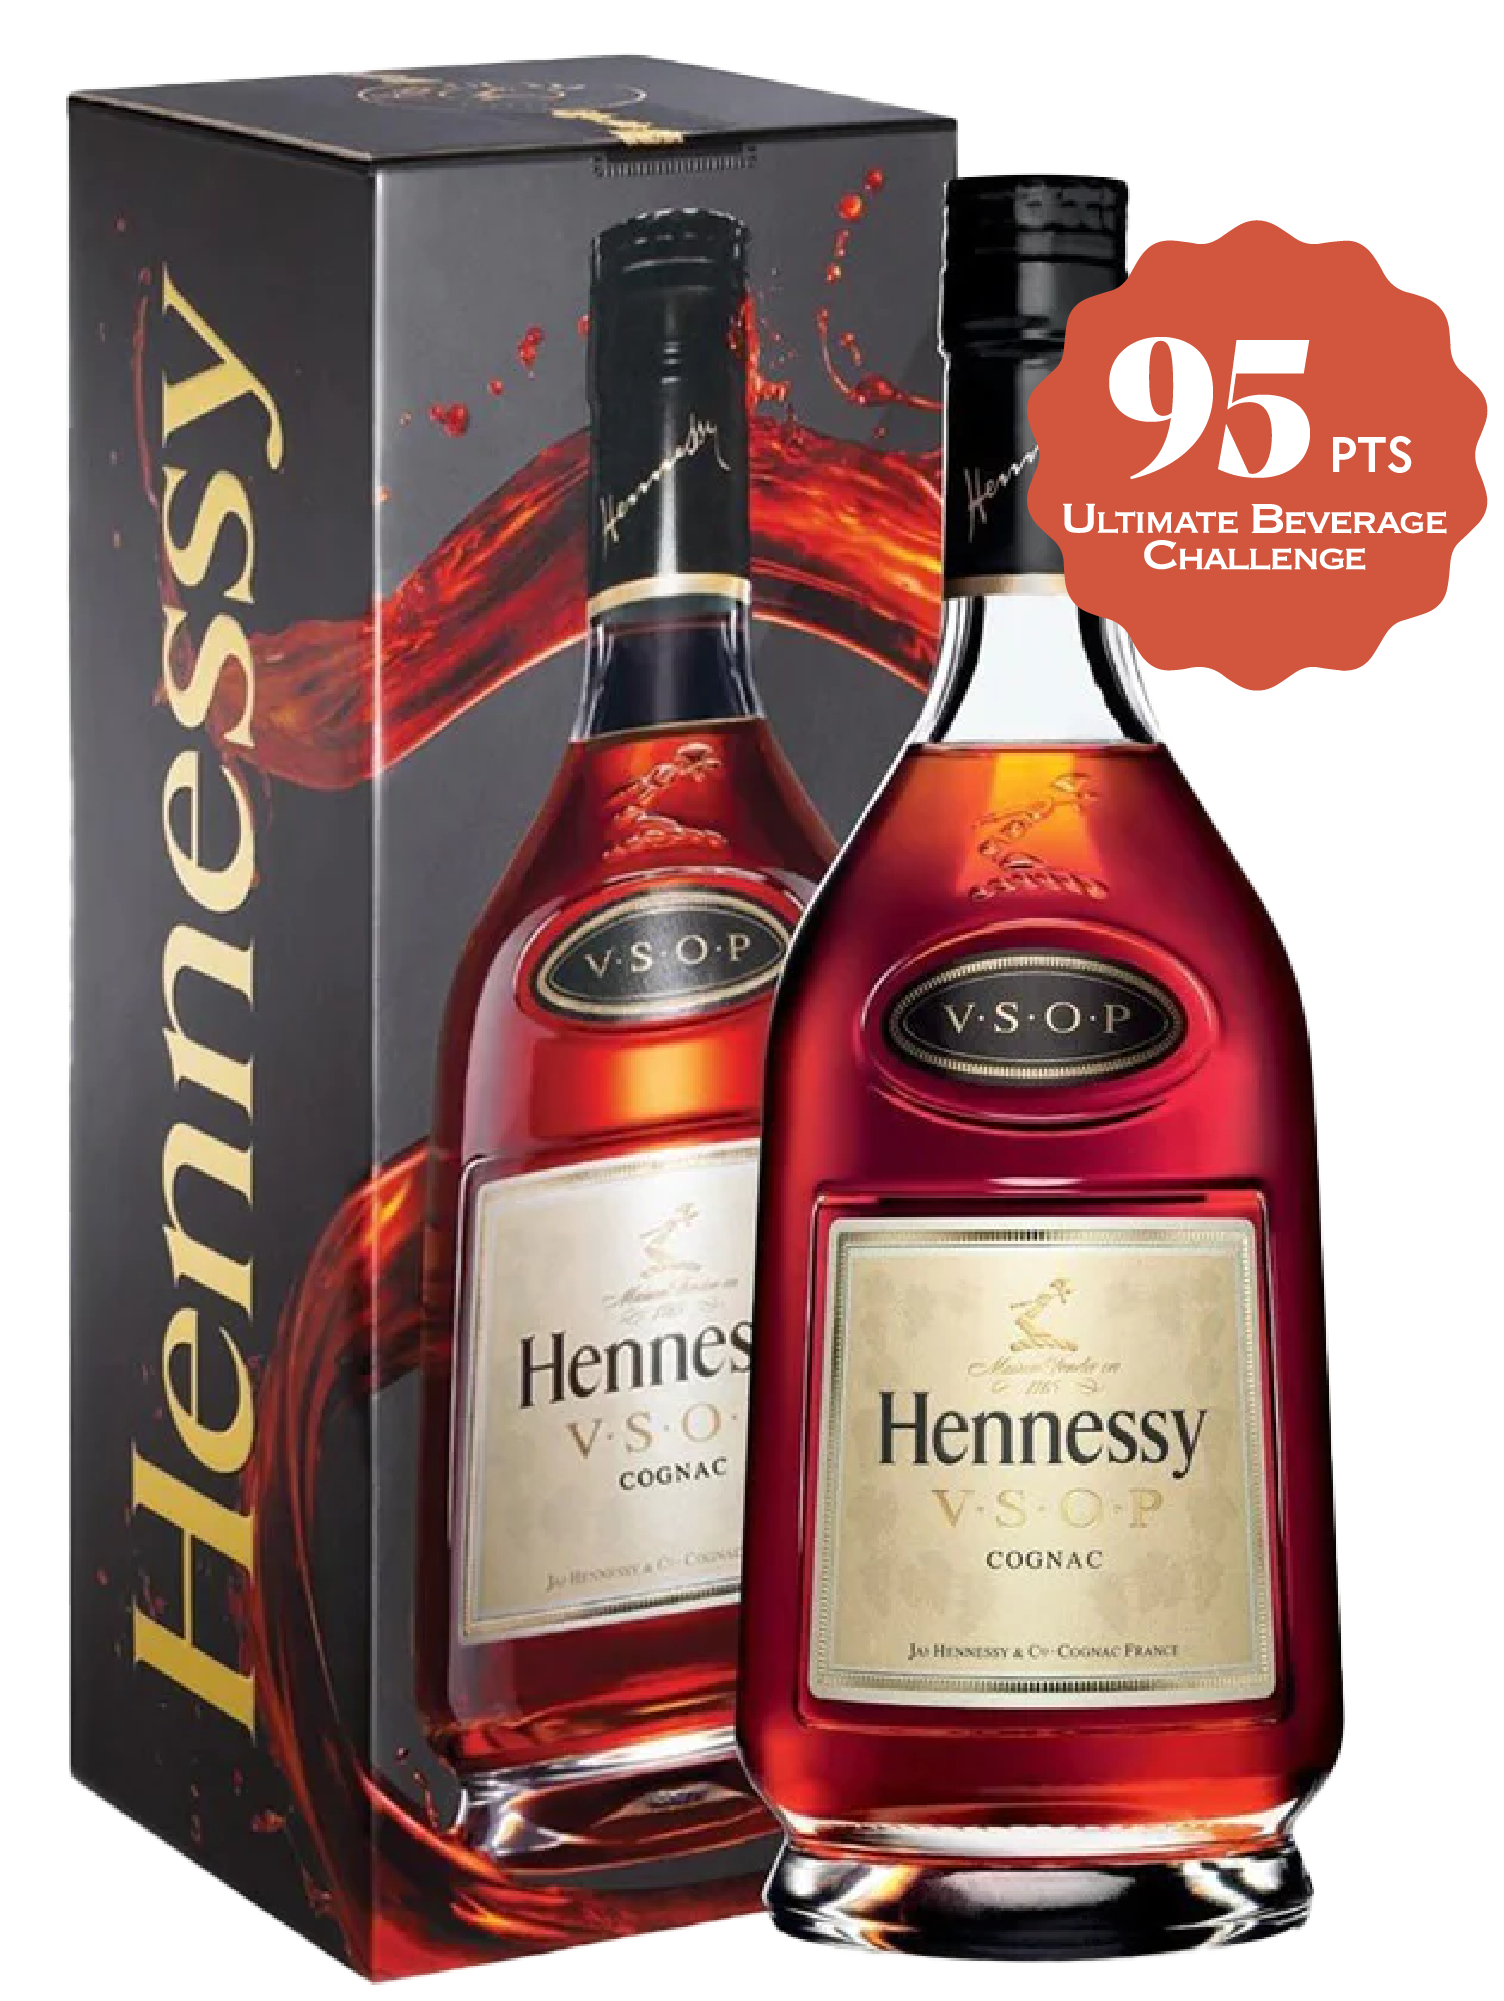 Hennessy Cognac Vsop France 750ml